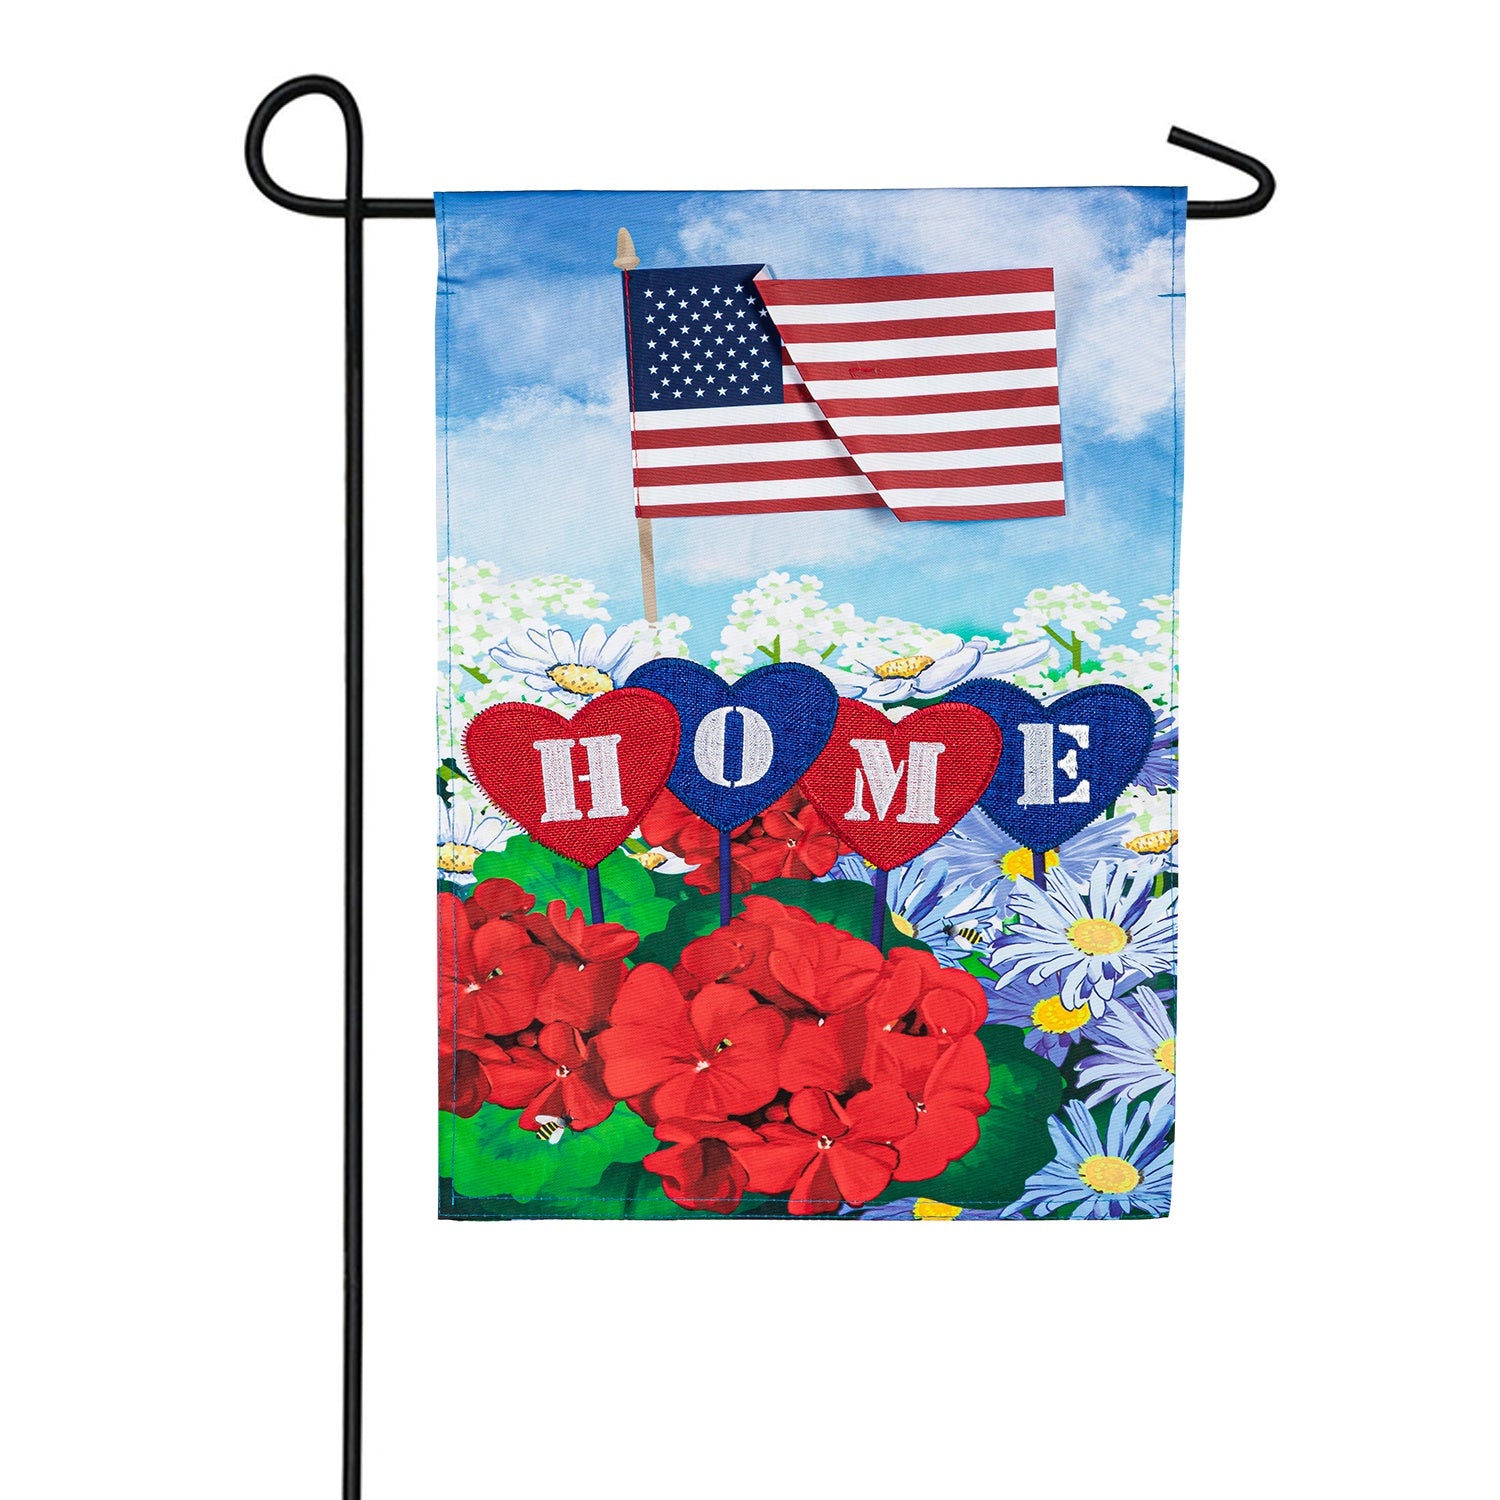 Patriotic Home in Hearts Applique Garden Flag